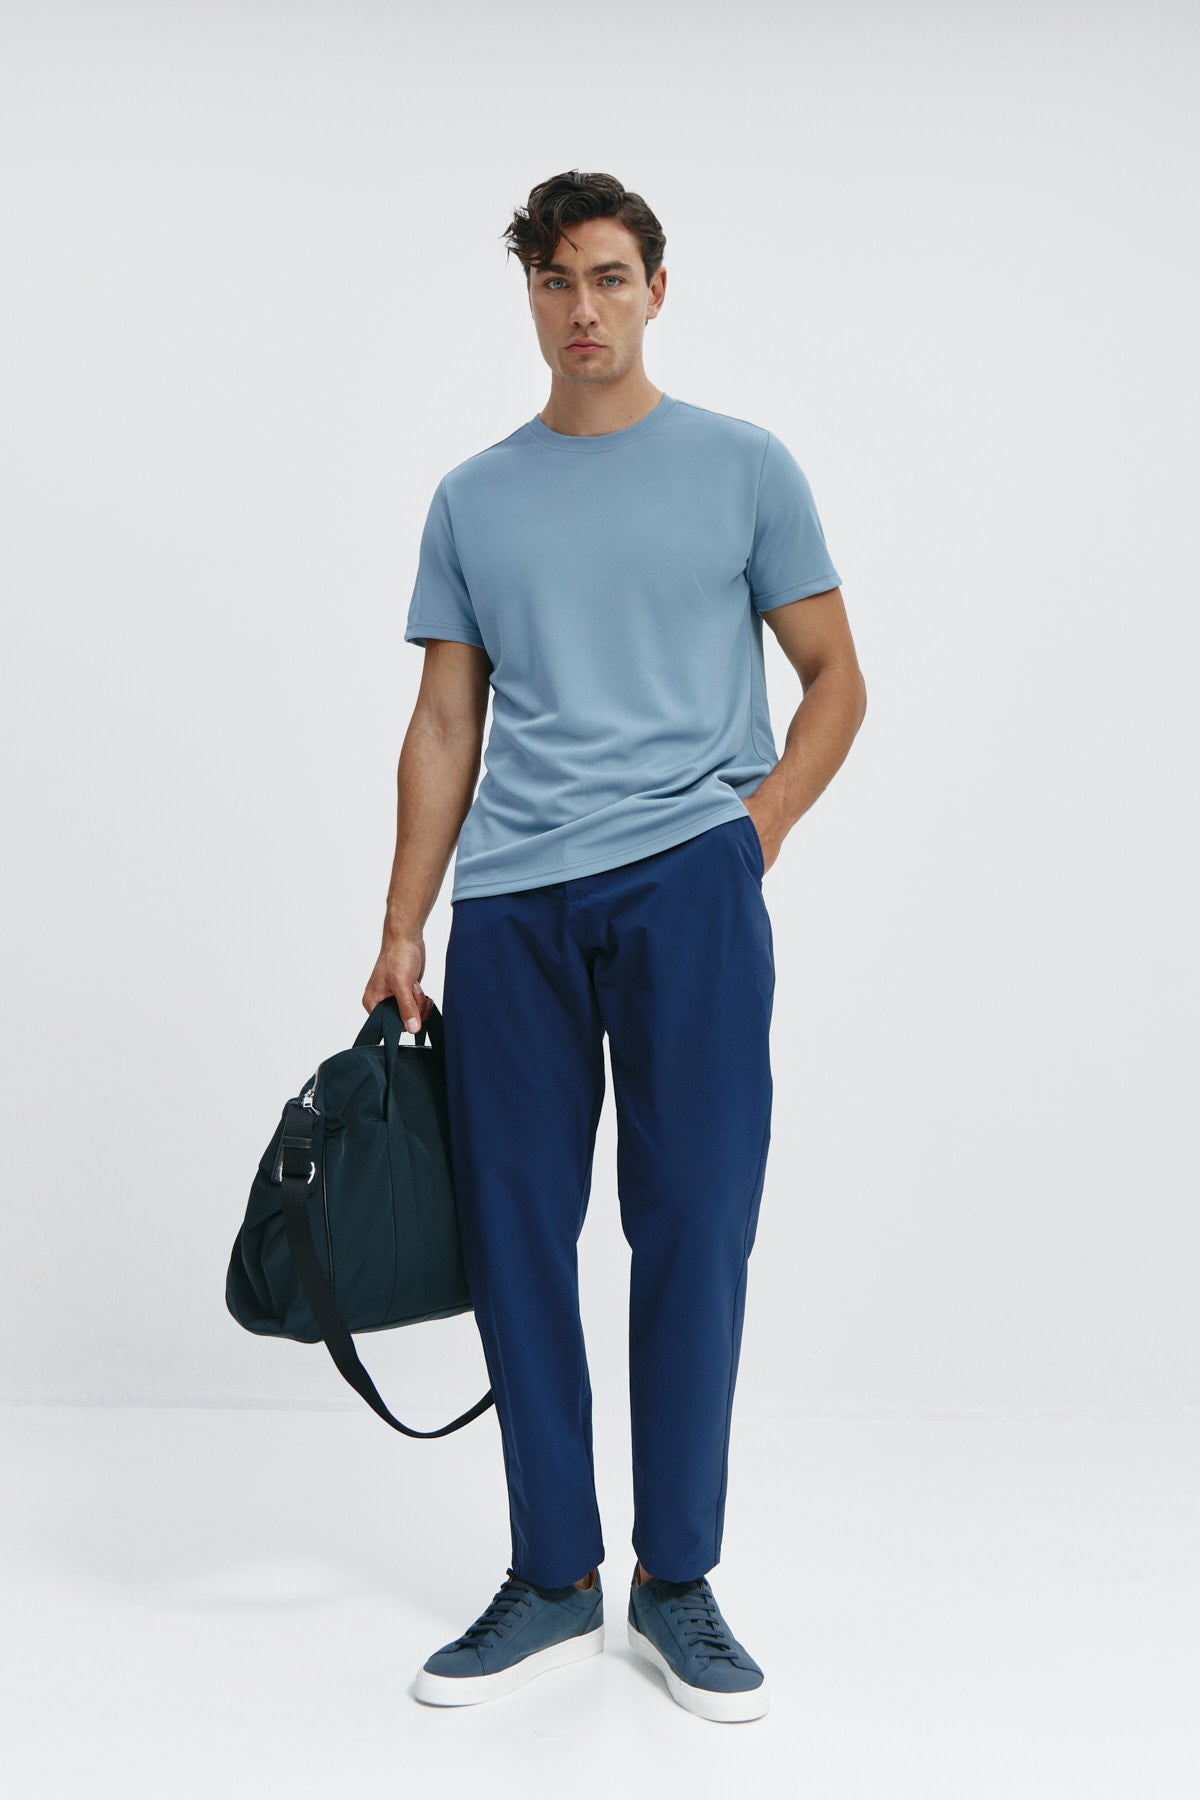 Camiseta de hombre en azul medianoche de Sepiia, estilo y comodidad en una prenda duradera. Foto cuerpo entero